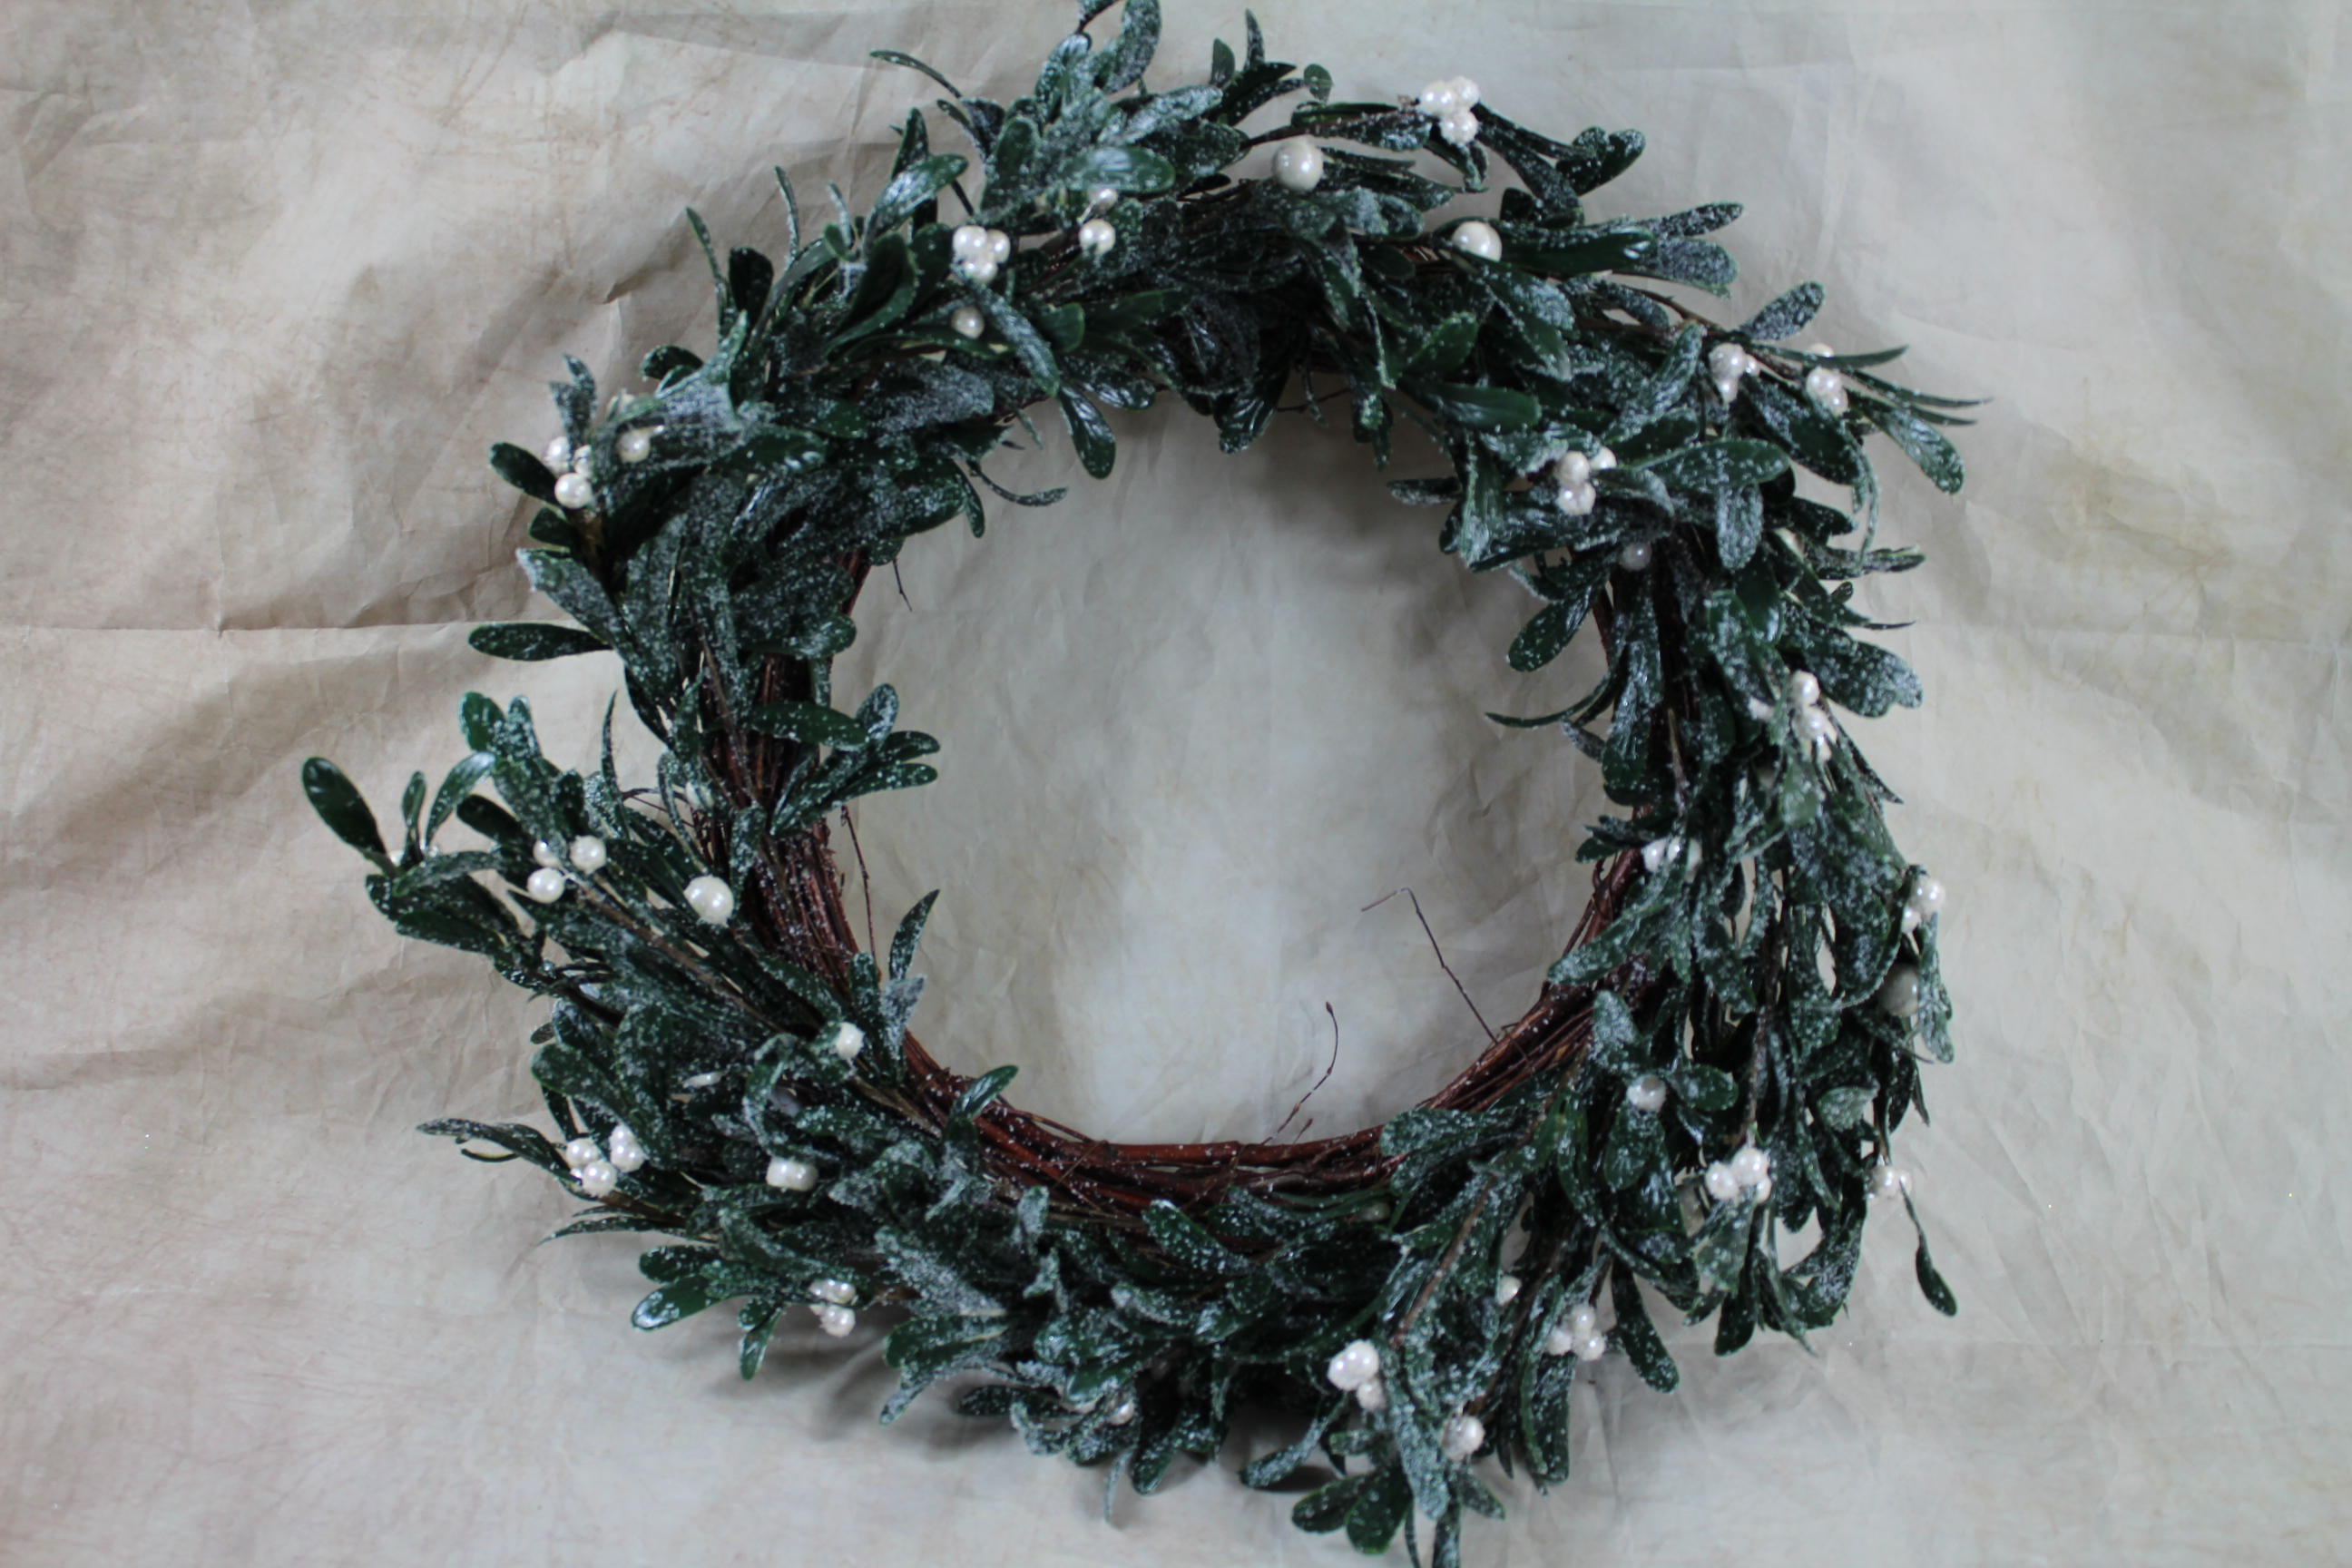 1 x dark mistletoe wreath on birch base